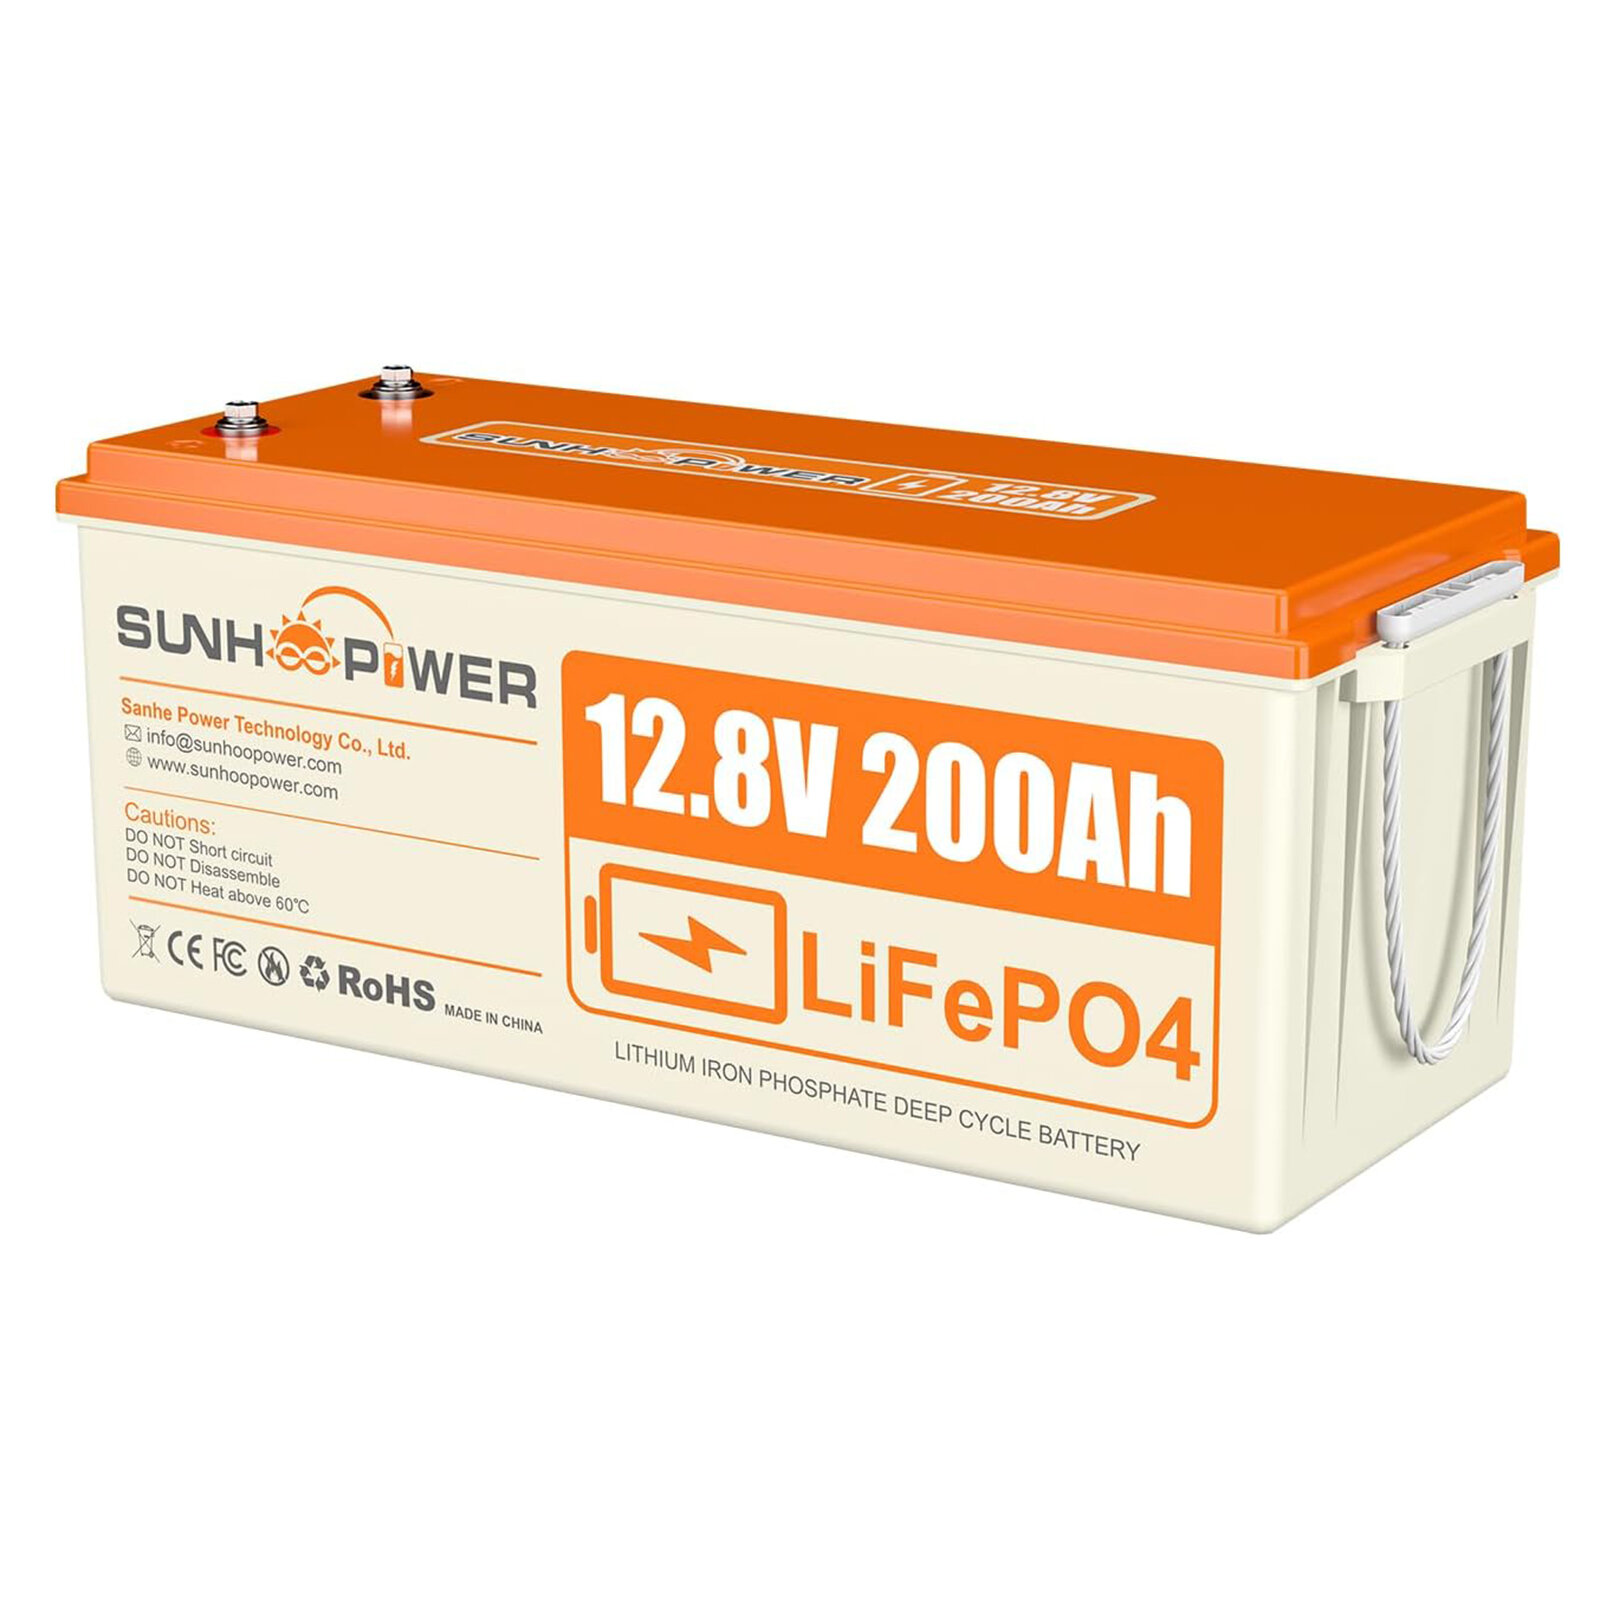 [EU Direct] Batería LiFePO4 12V 200AH de SUNHOOPOWER, 2560Wh Batería de litio recargable con 100A BMS incorporado, autodescarga, perfecta para RV, marina, almacenamiento de energía, respaldo de energía fuera de la red